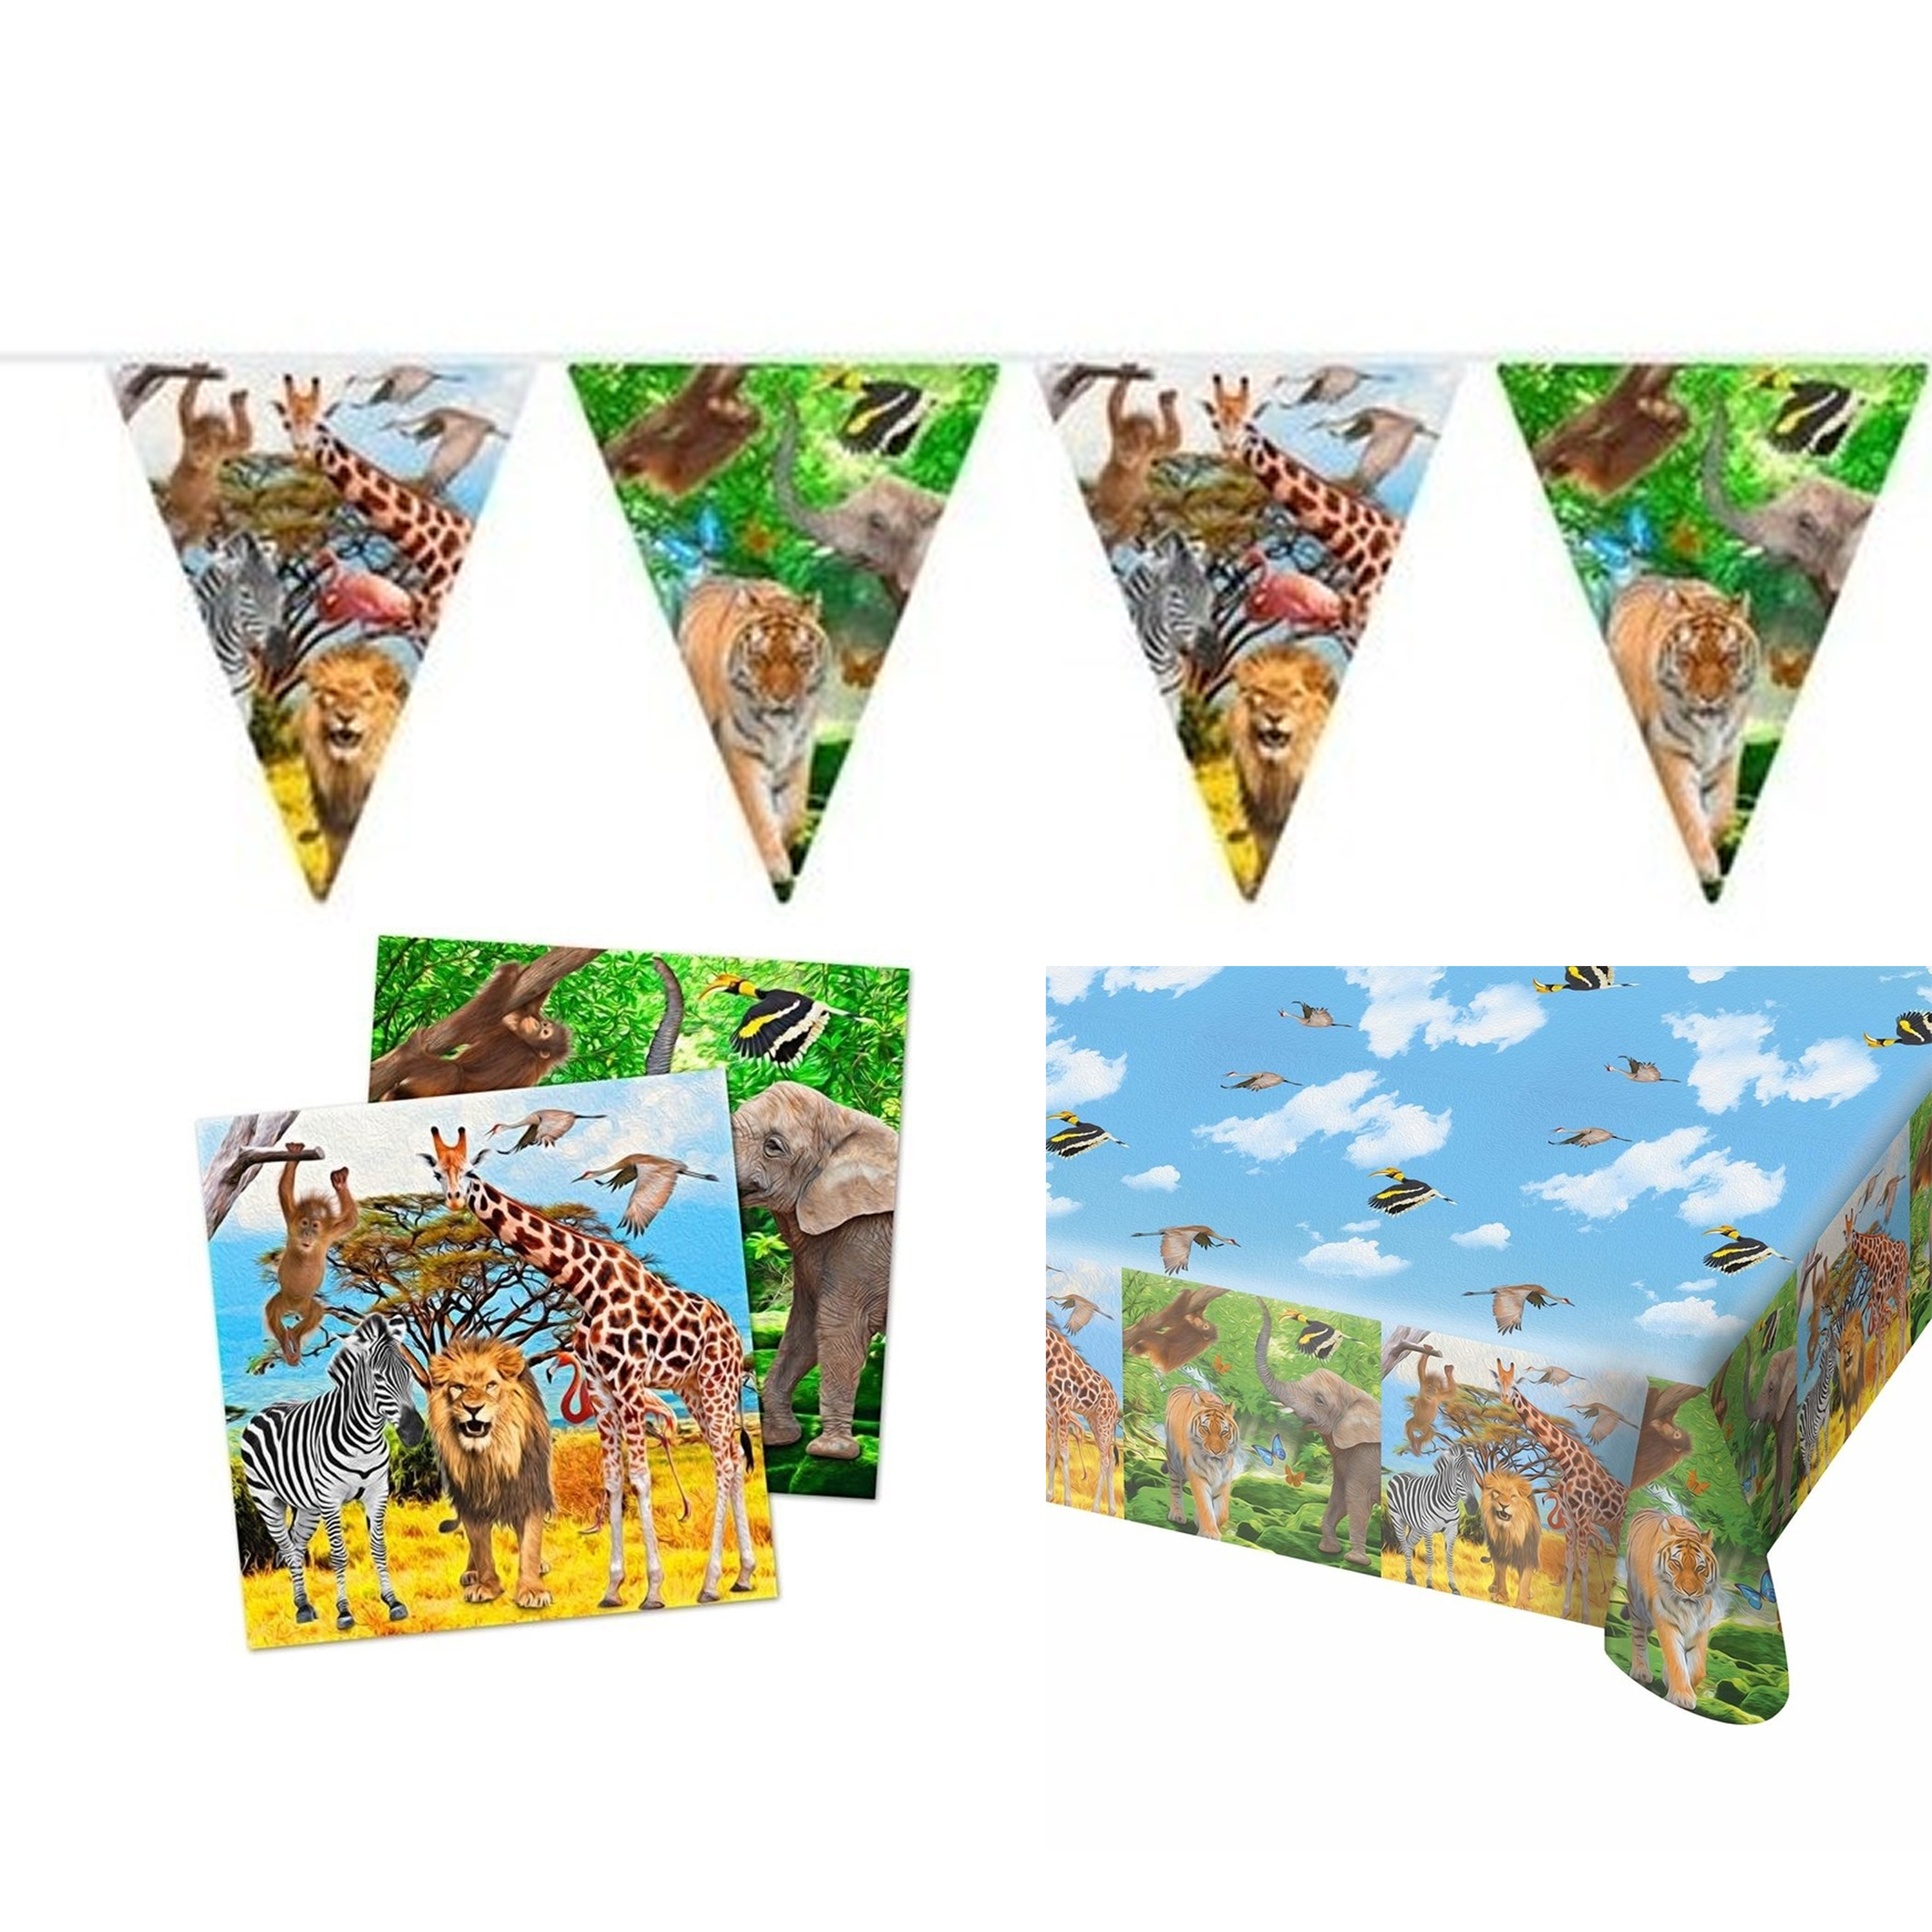 Kinderverjaardag/kinderfeestje tafeldek set tafelkleed/servetten/vlaggetjes jungle thema -